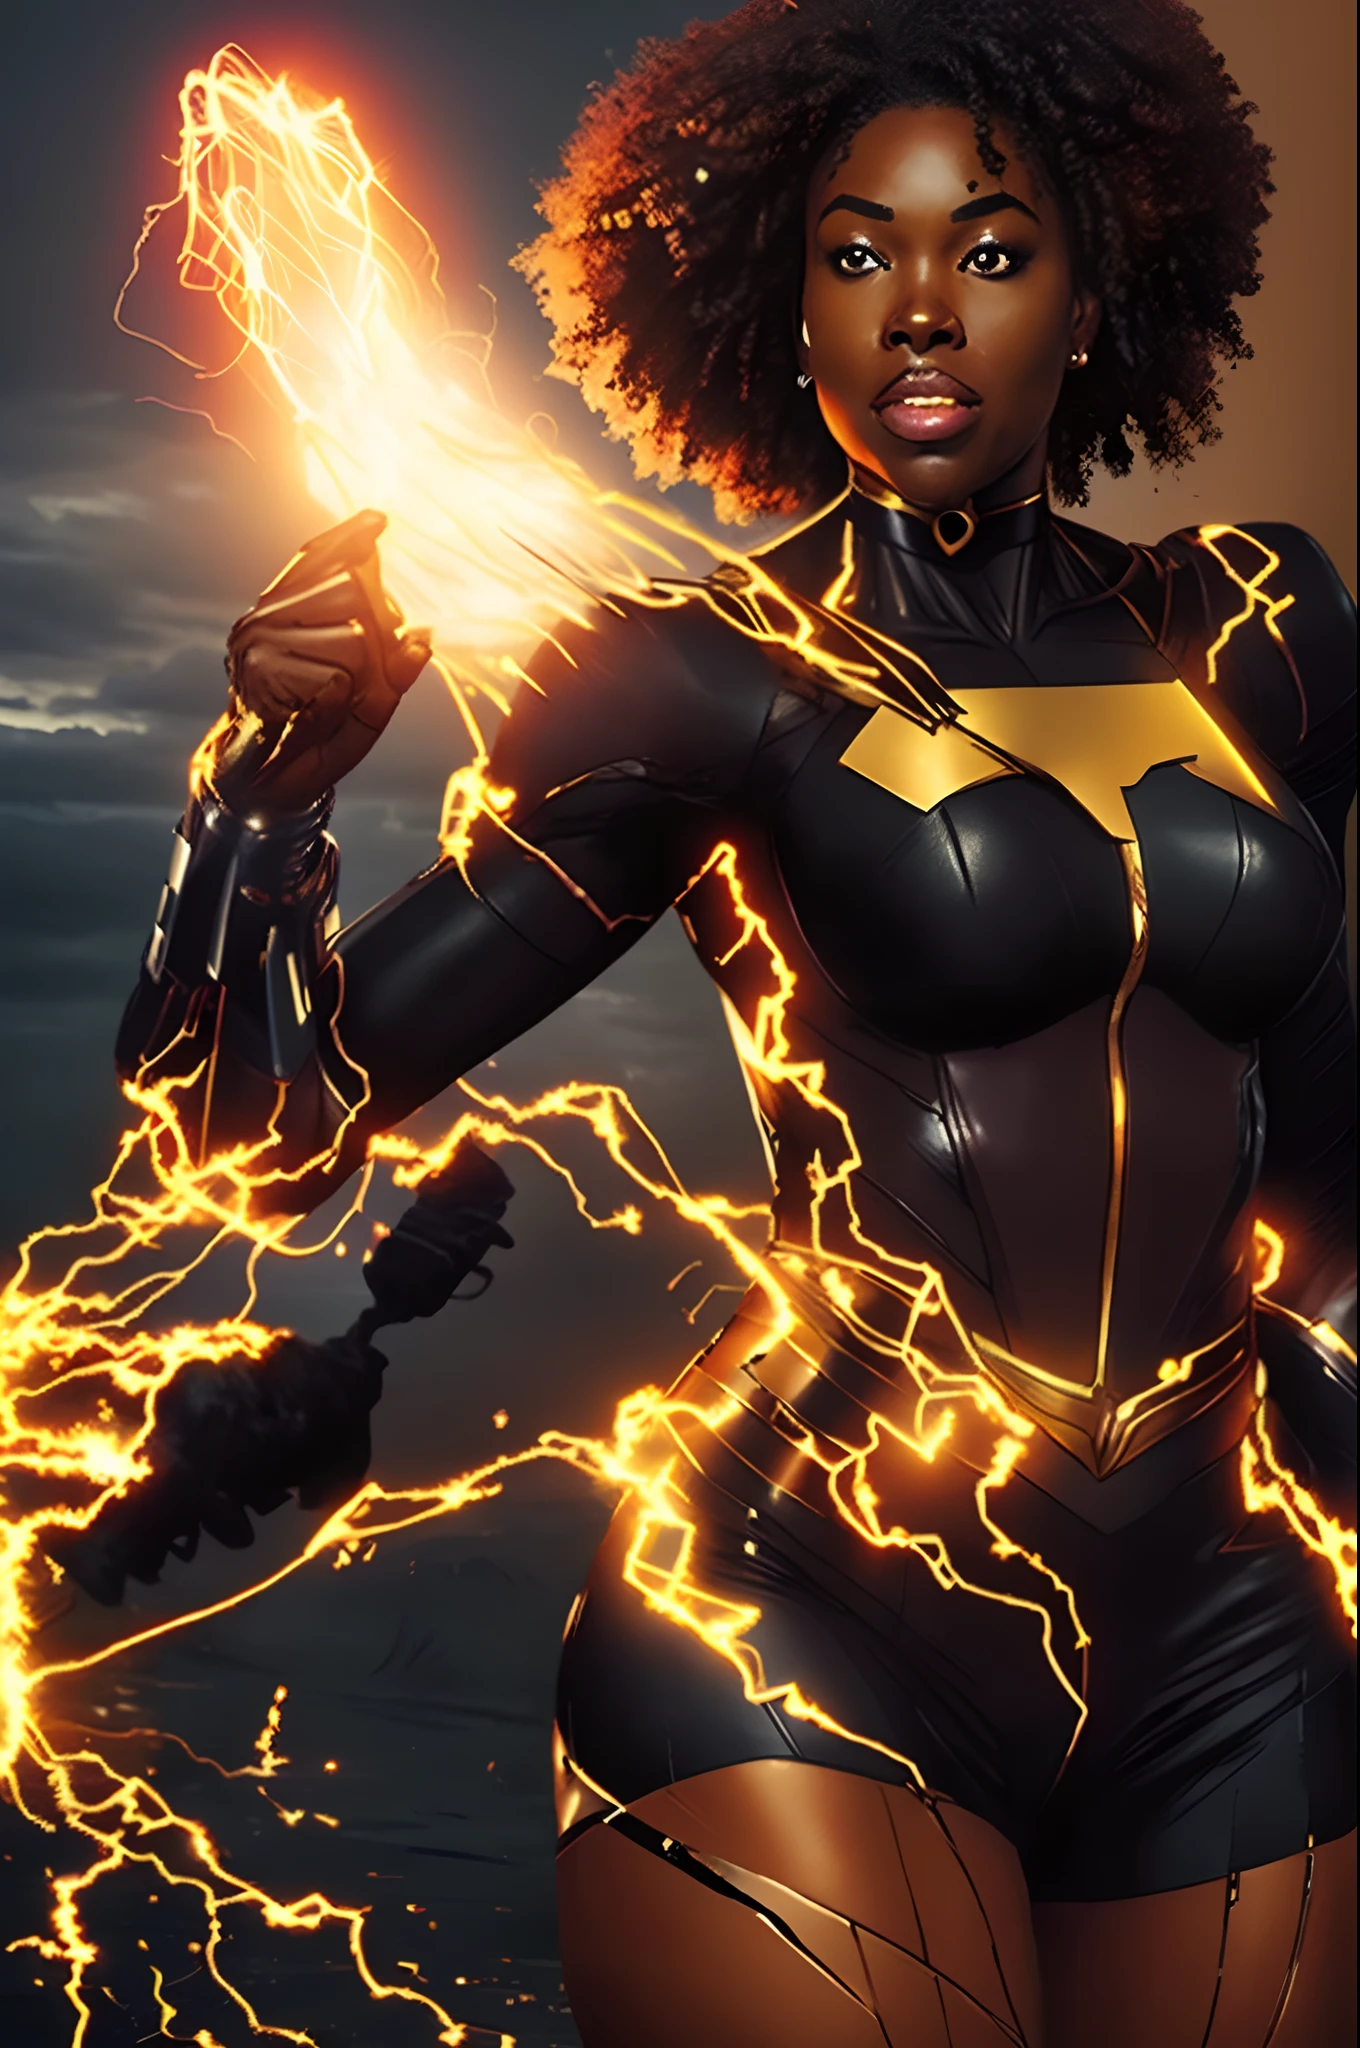 Machen Sie eine schwarze Superheldin mit elektrischen Kräften